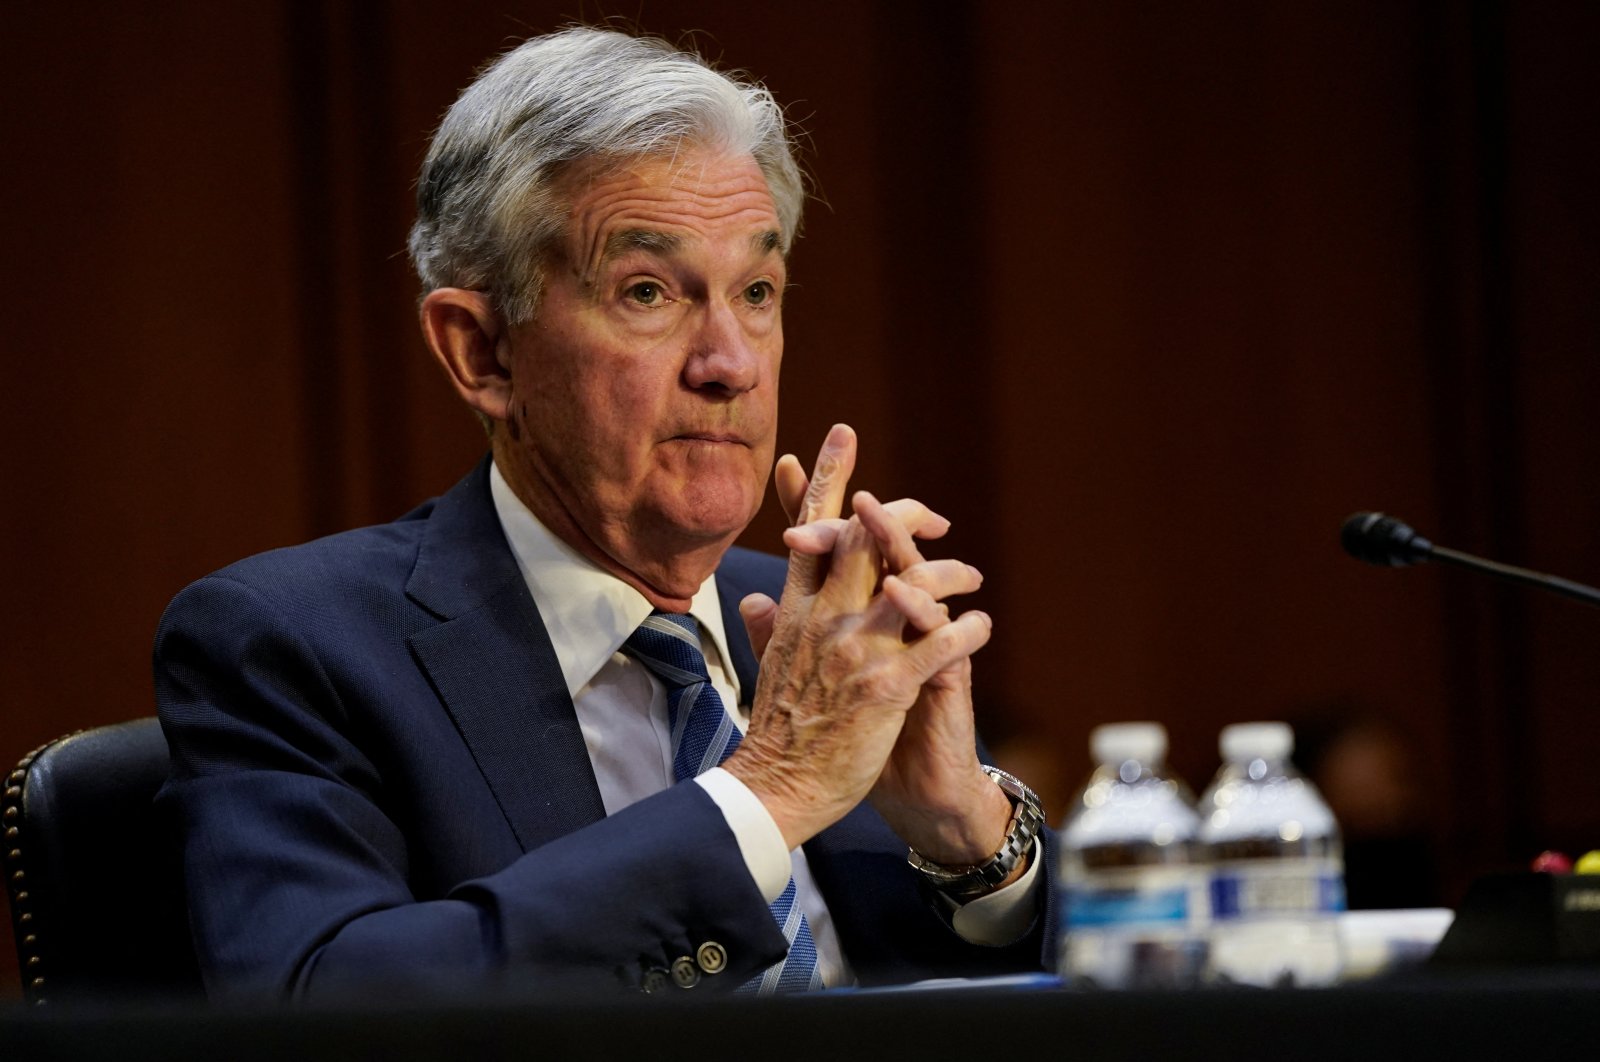 Kenaikan suku bunga ‘Tentu saja kemungkinan’ dapat memicu resesi AS: Powell Fed